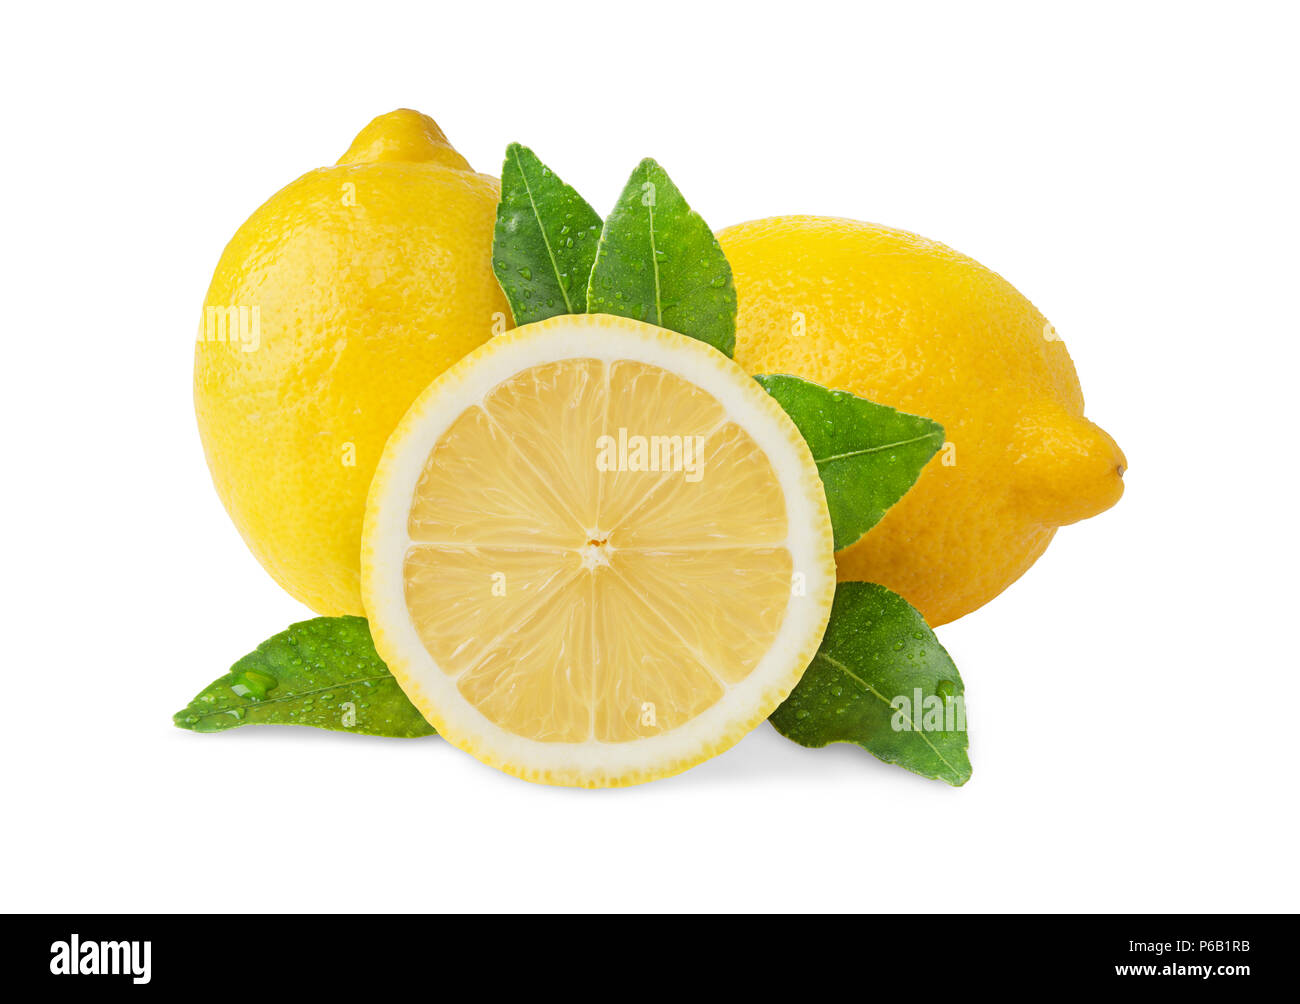 Gruppo di limoni freschi con foglie isolati su sfondo bianco Foto Stock